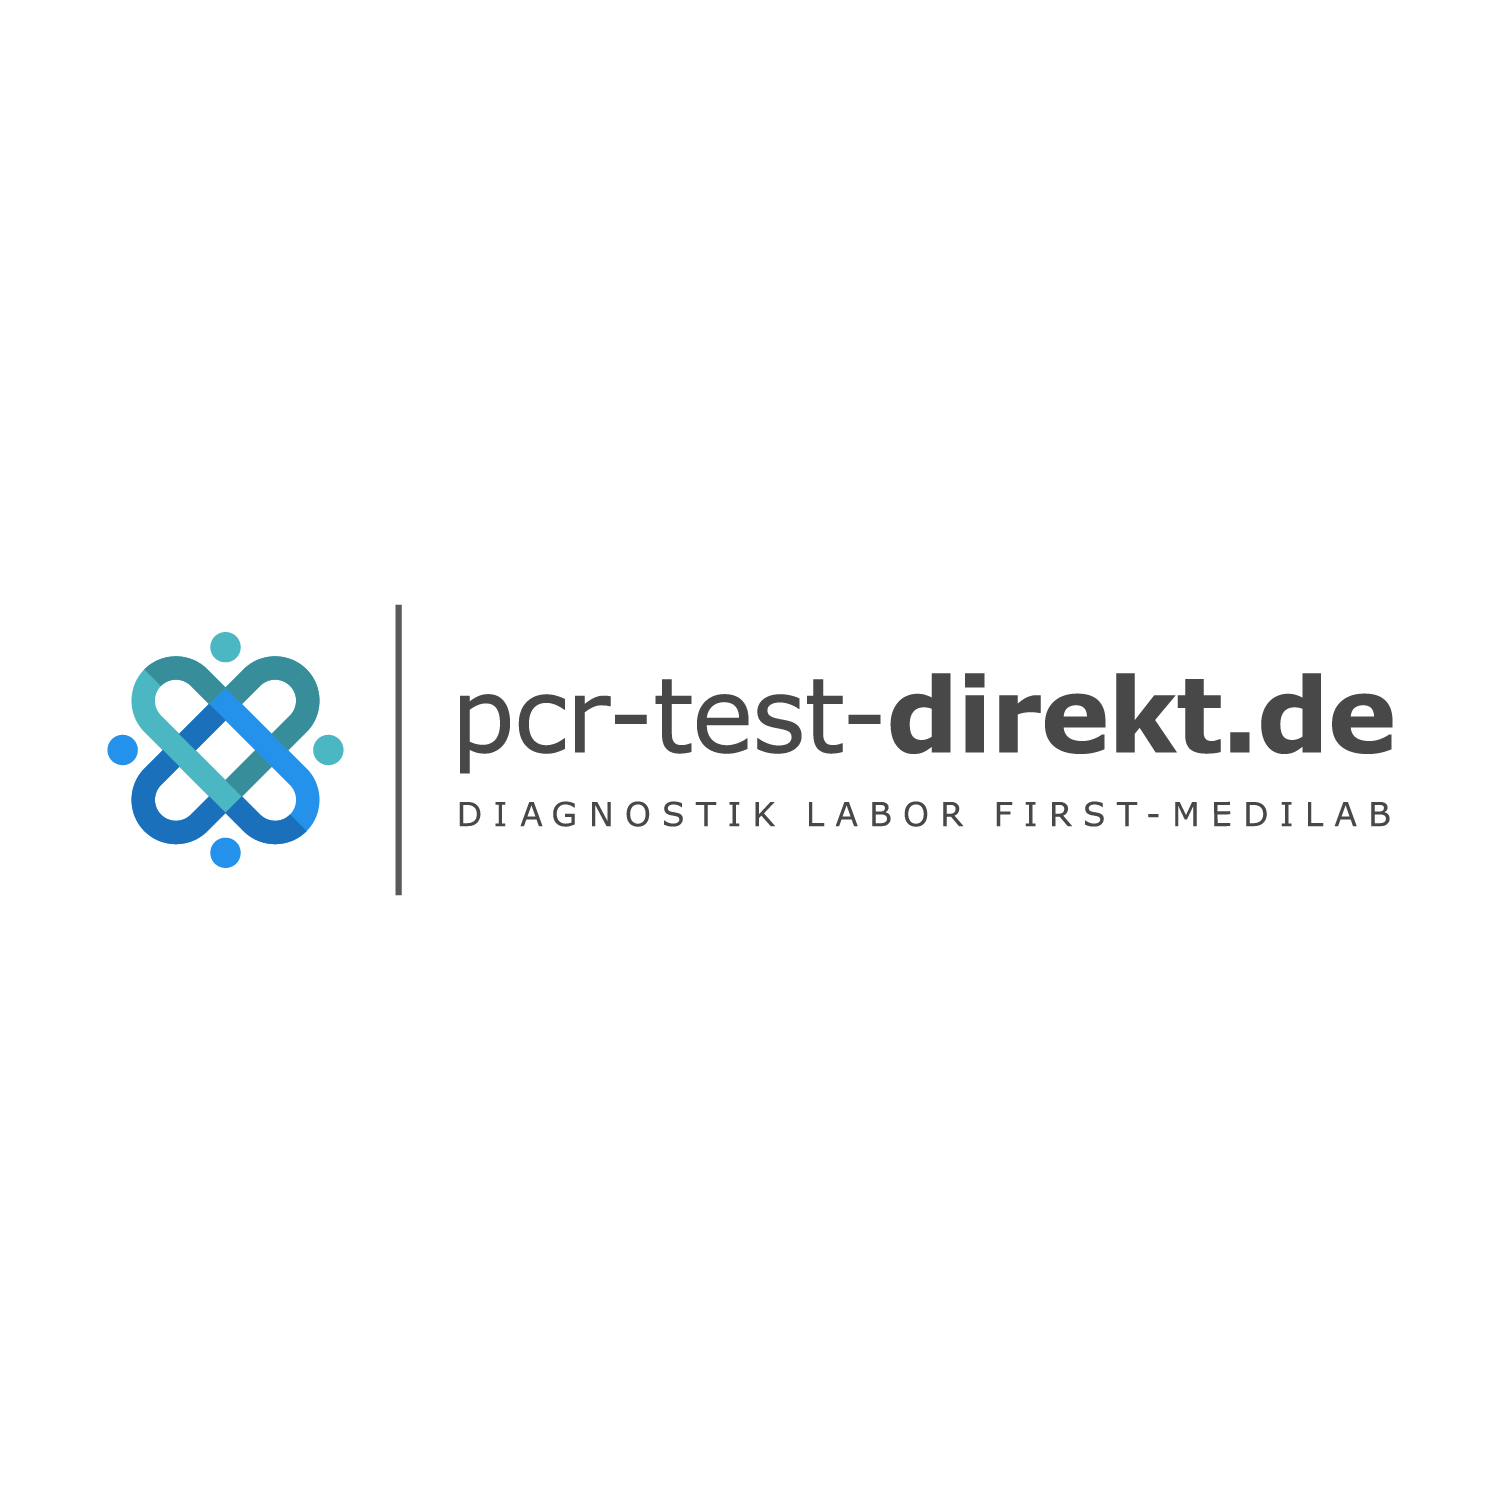 PCR-Testzentrum Freiburg im Breisgau - Hallenbad Hochdorf | pcr-test-direkt.de